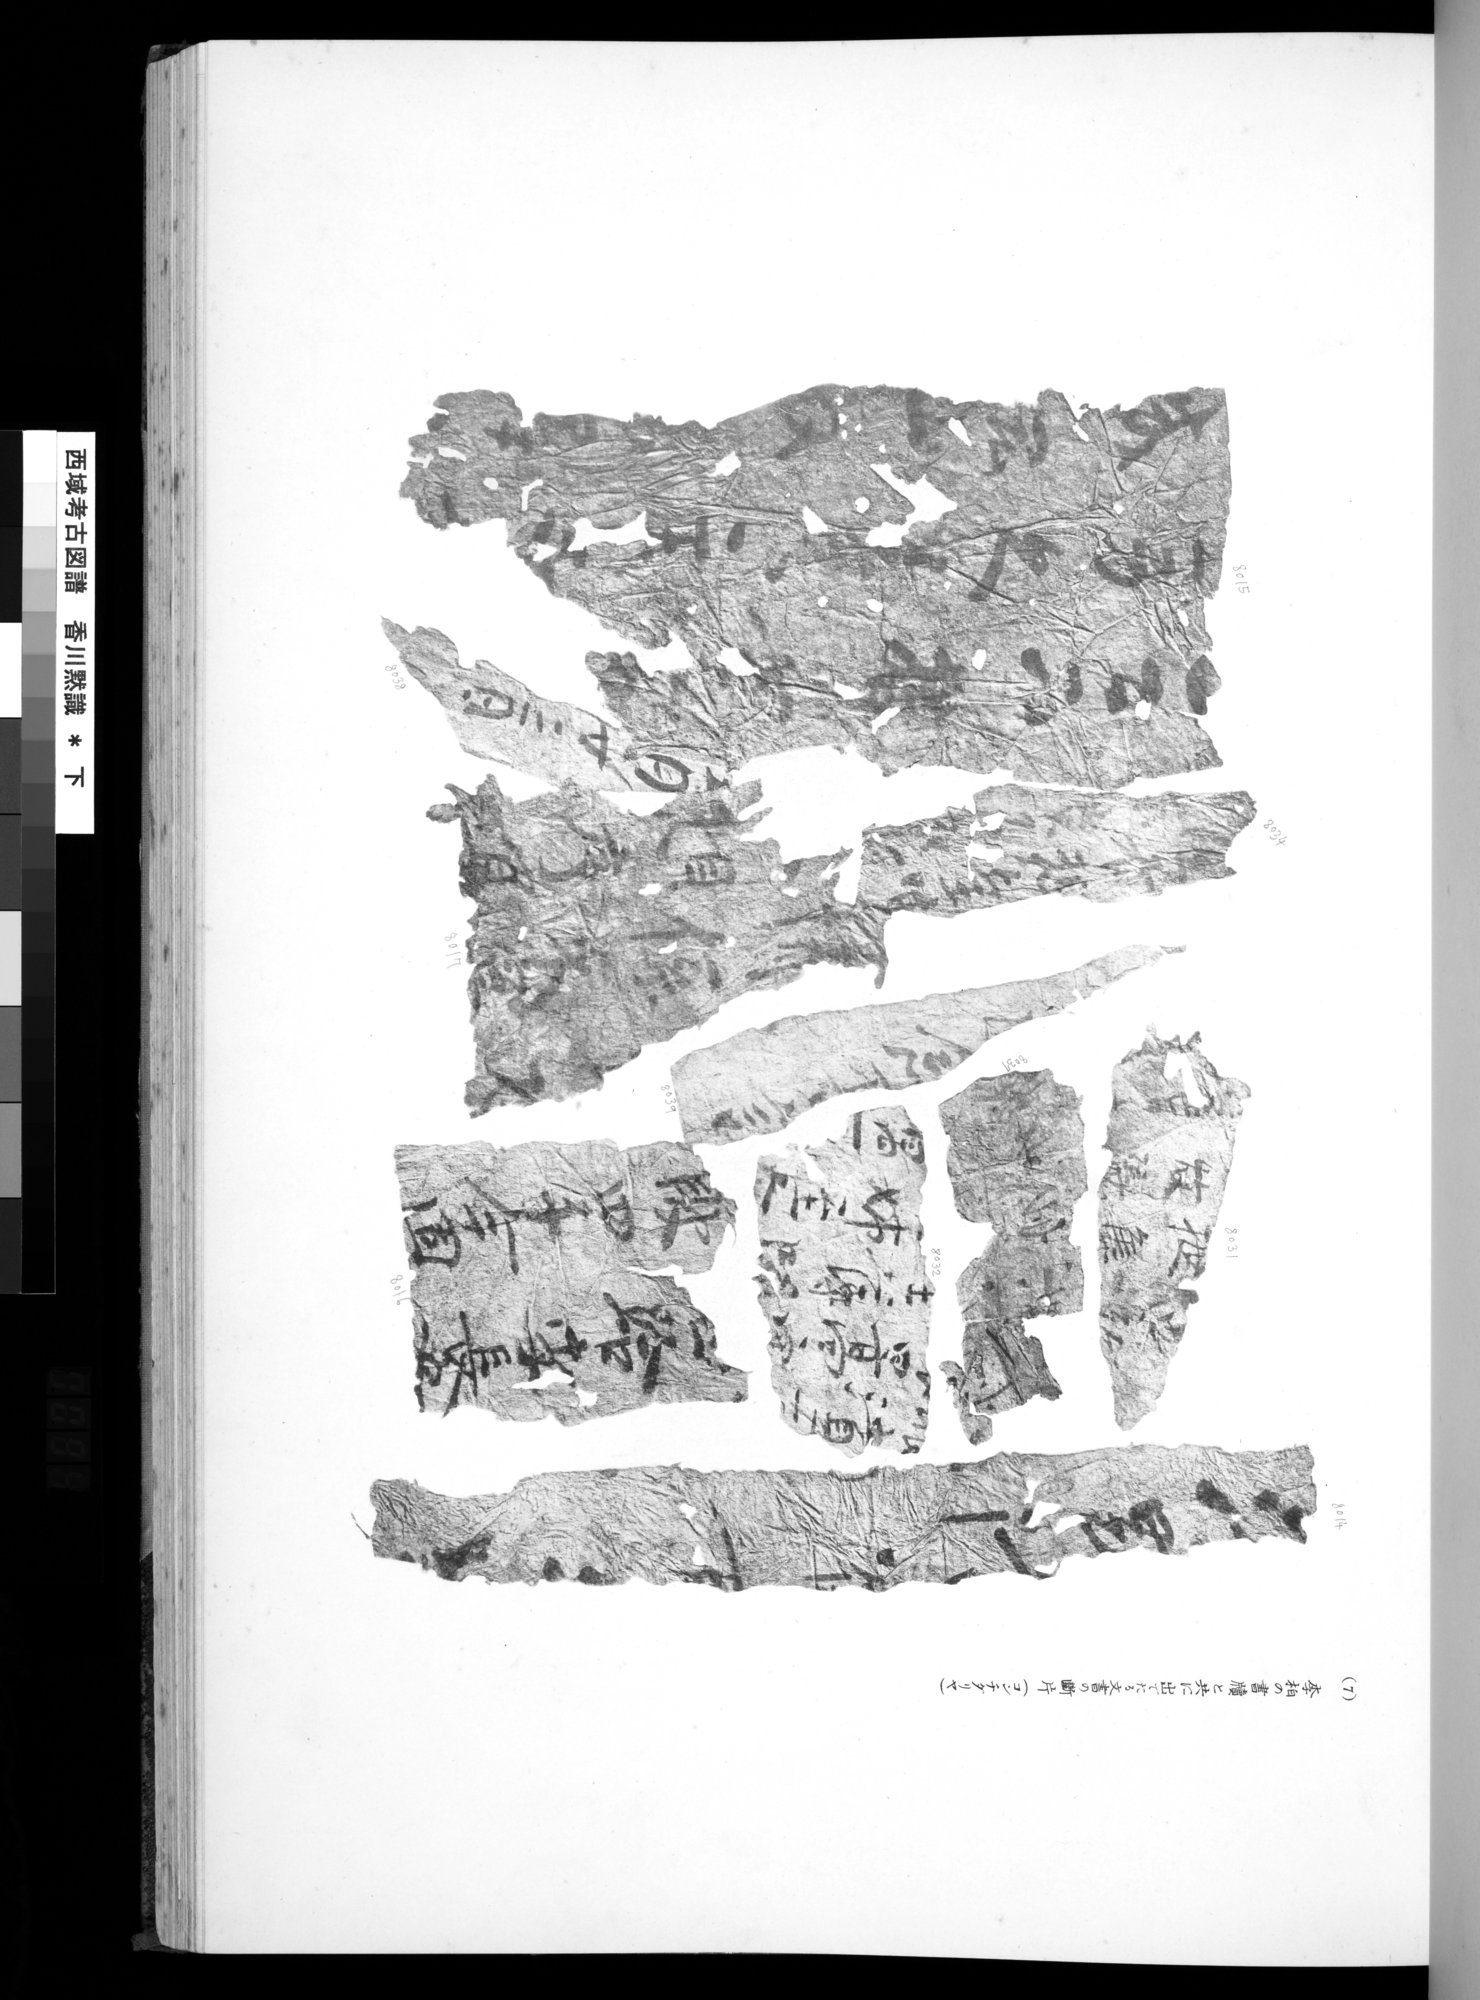 西域考古図譜 : vol.2 / Page 187 (Grayscale High Resolution Image)